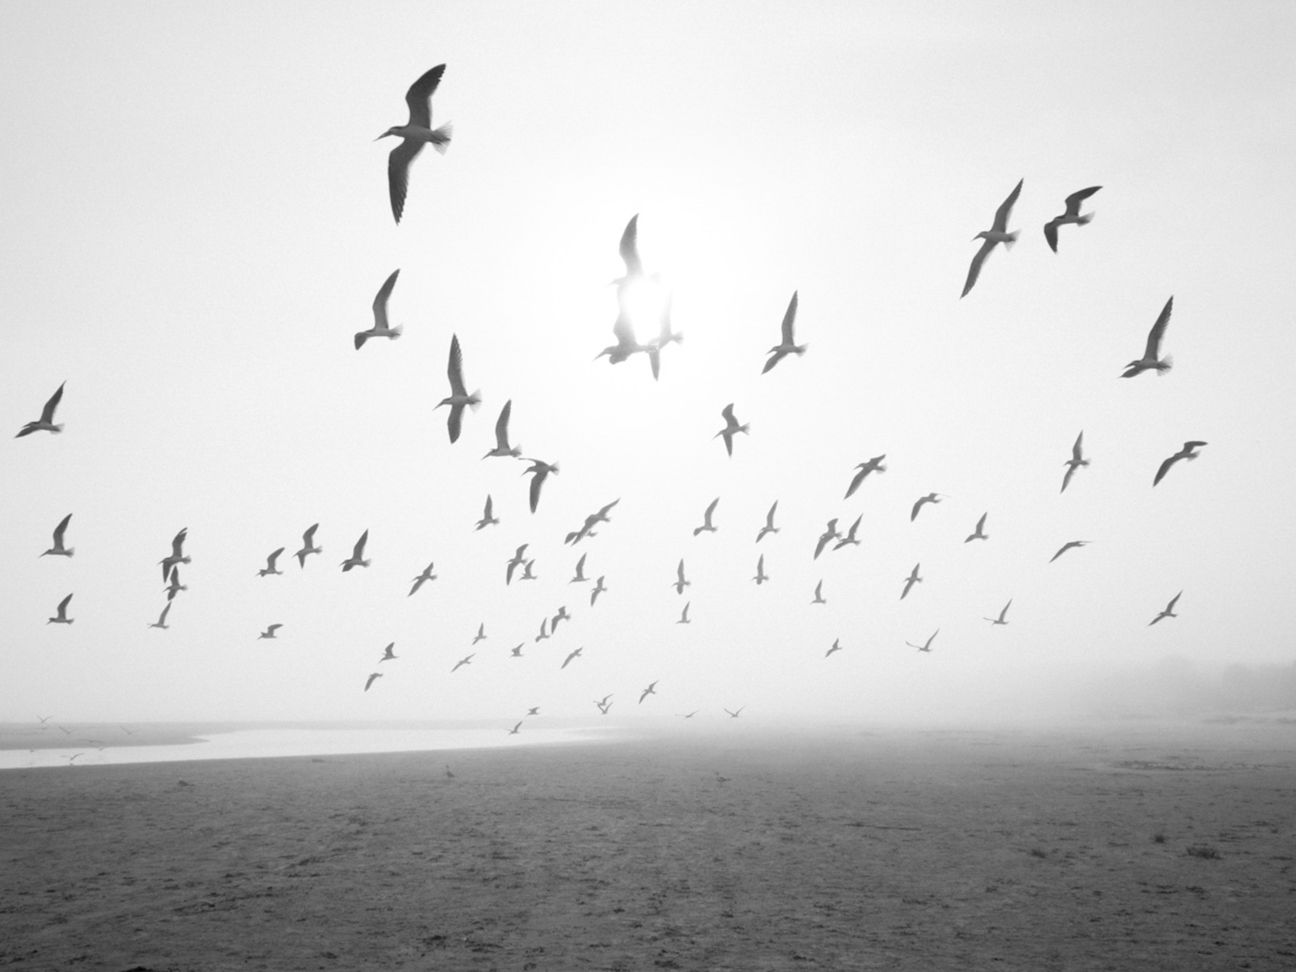  Birds flying near the shore in fog